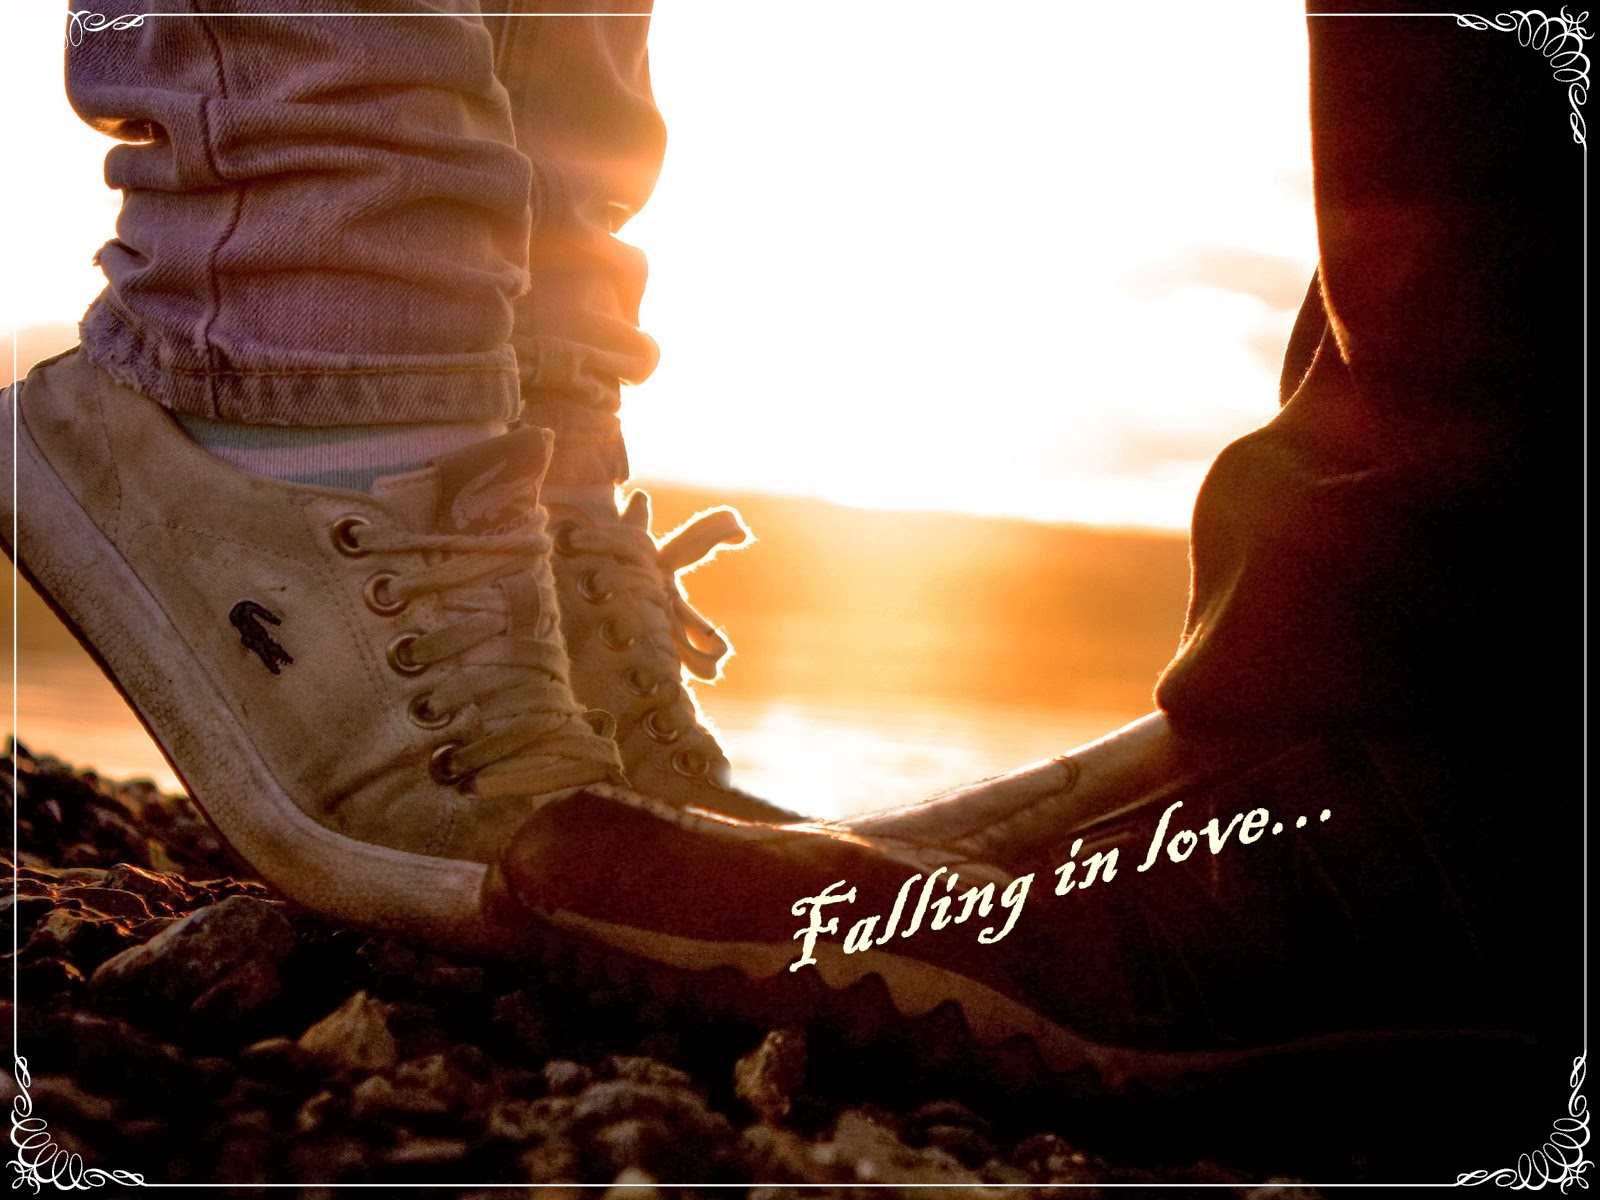 Falling in love